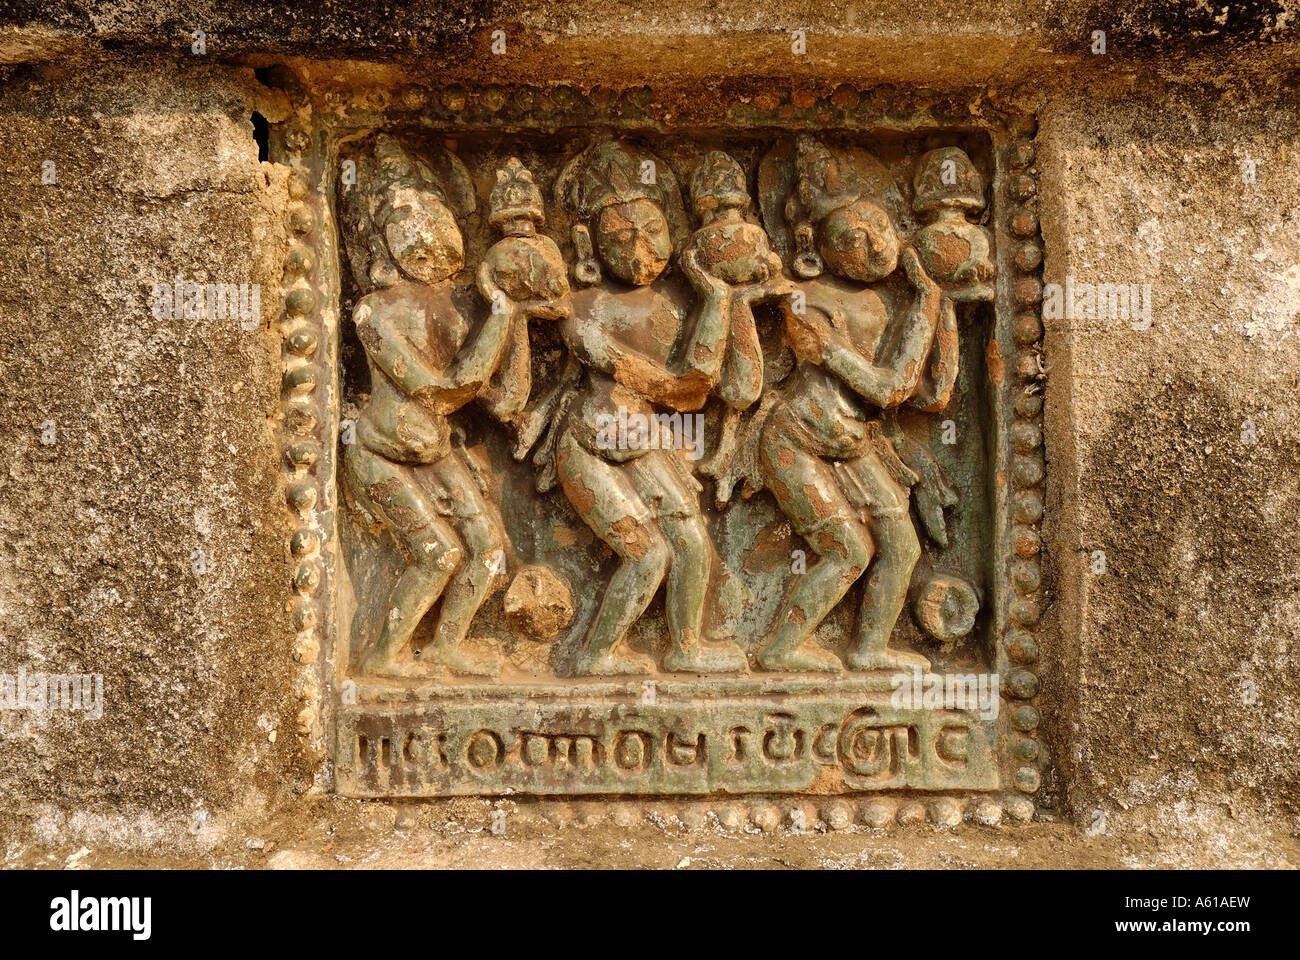 Carreaux de céramique antique, Ananda temple, Bagan, Myanmar Banque D'Images